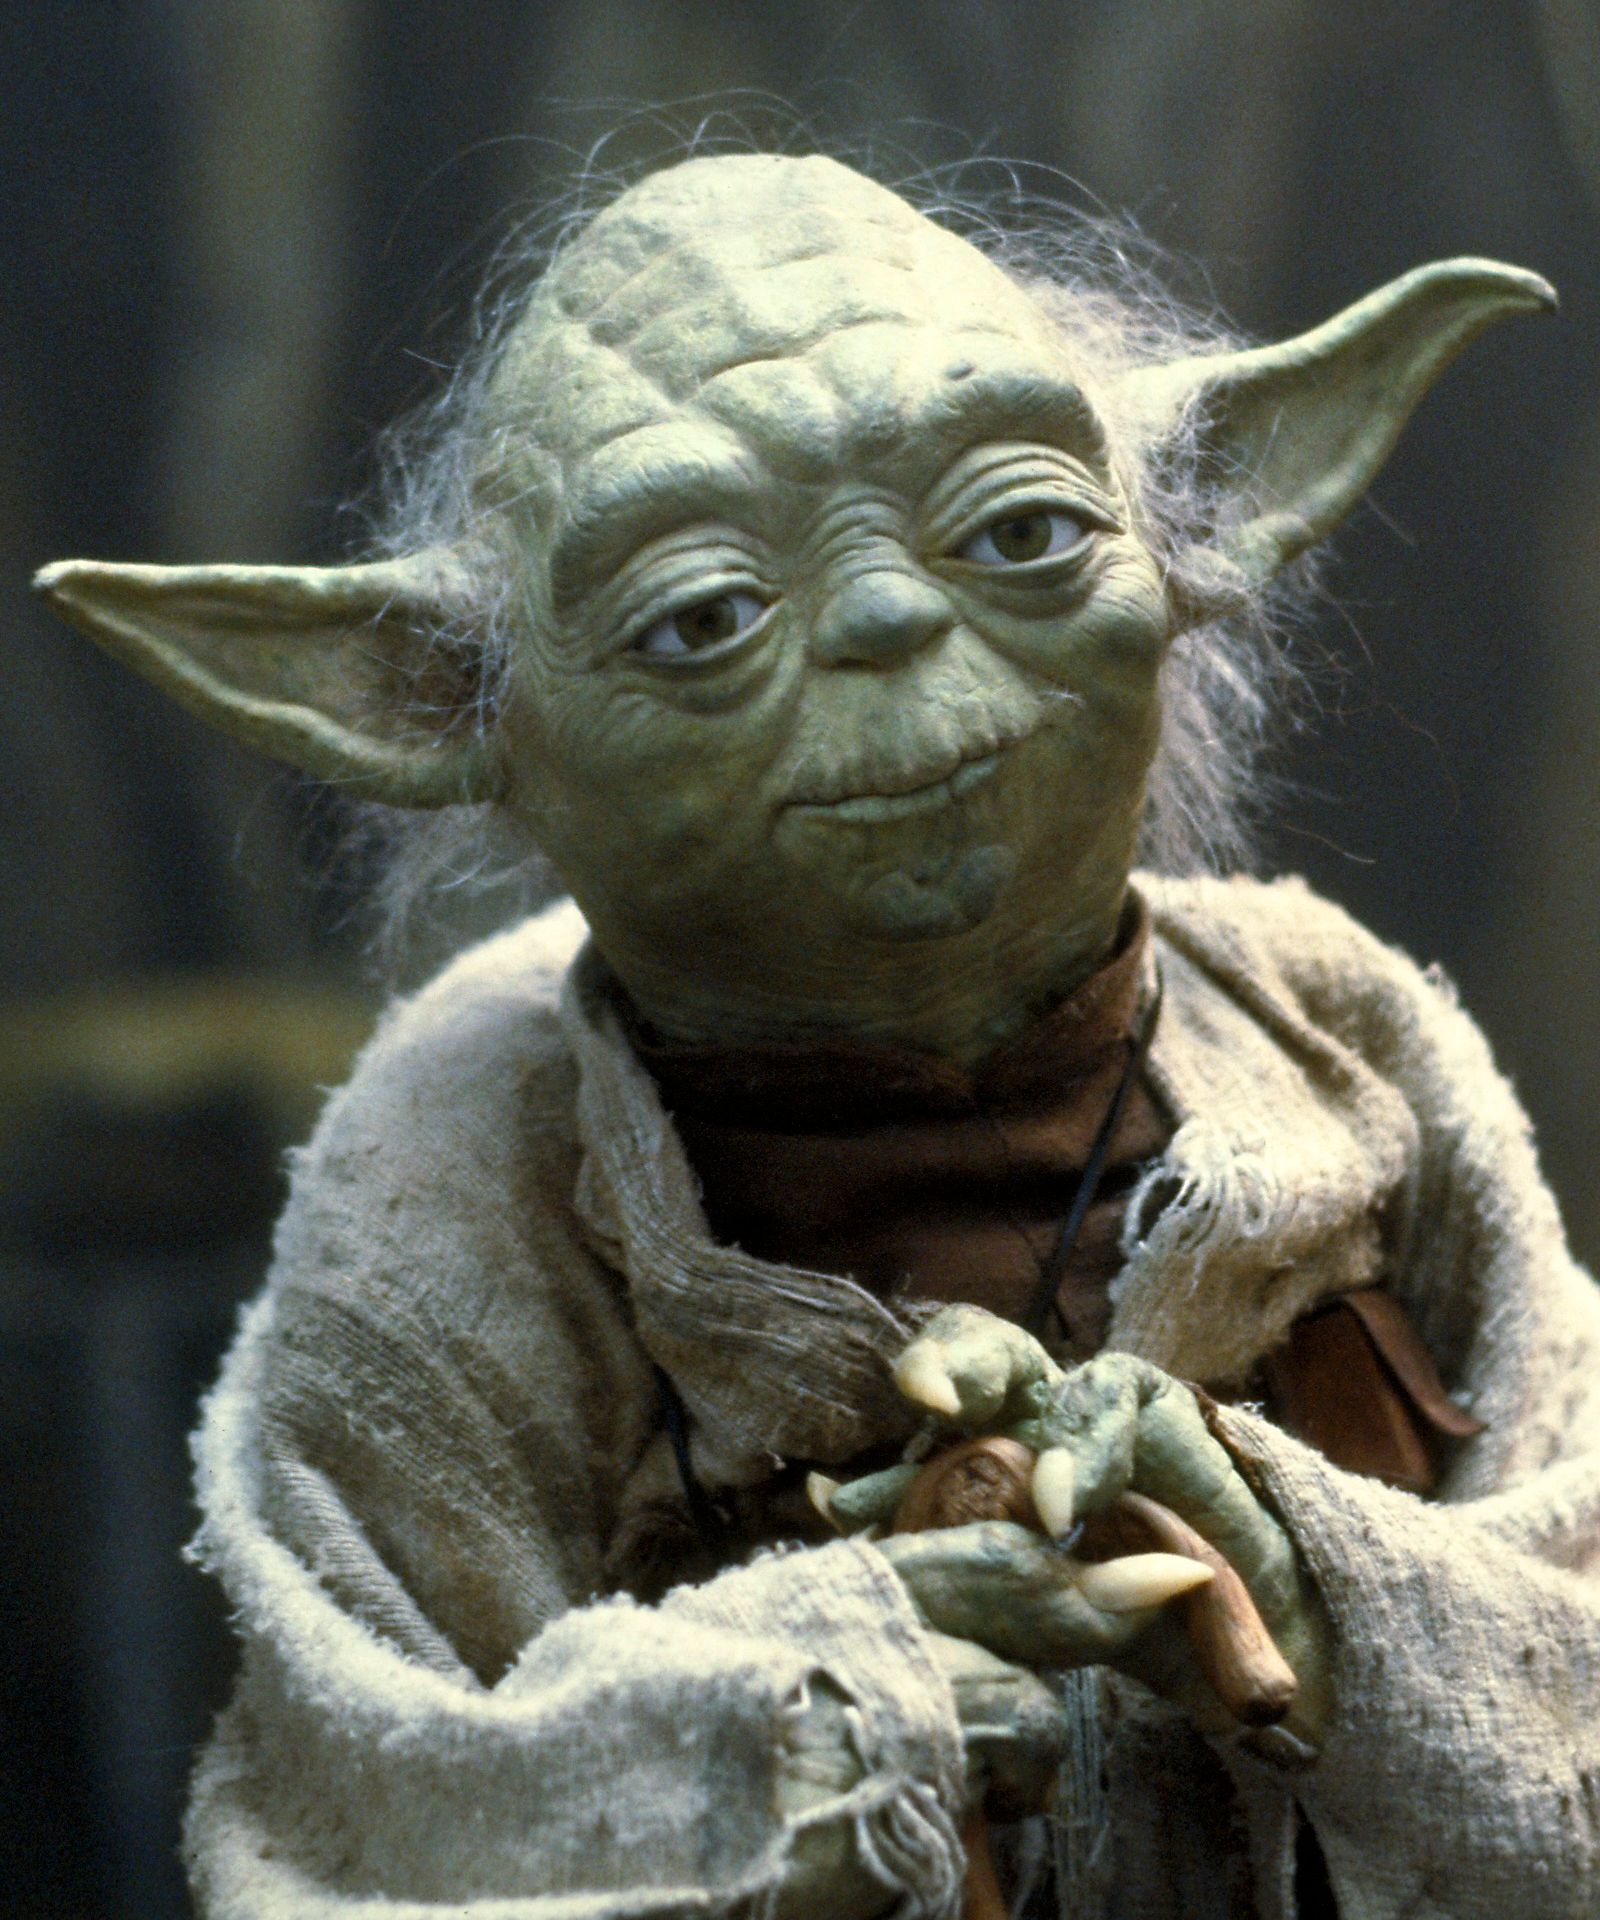 The Mandalorian : le vrai nom de Baby Yoda enfin révélé